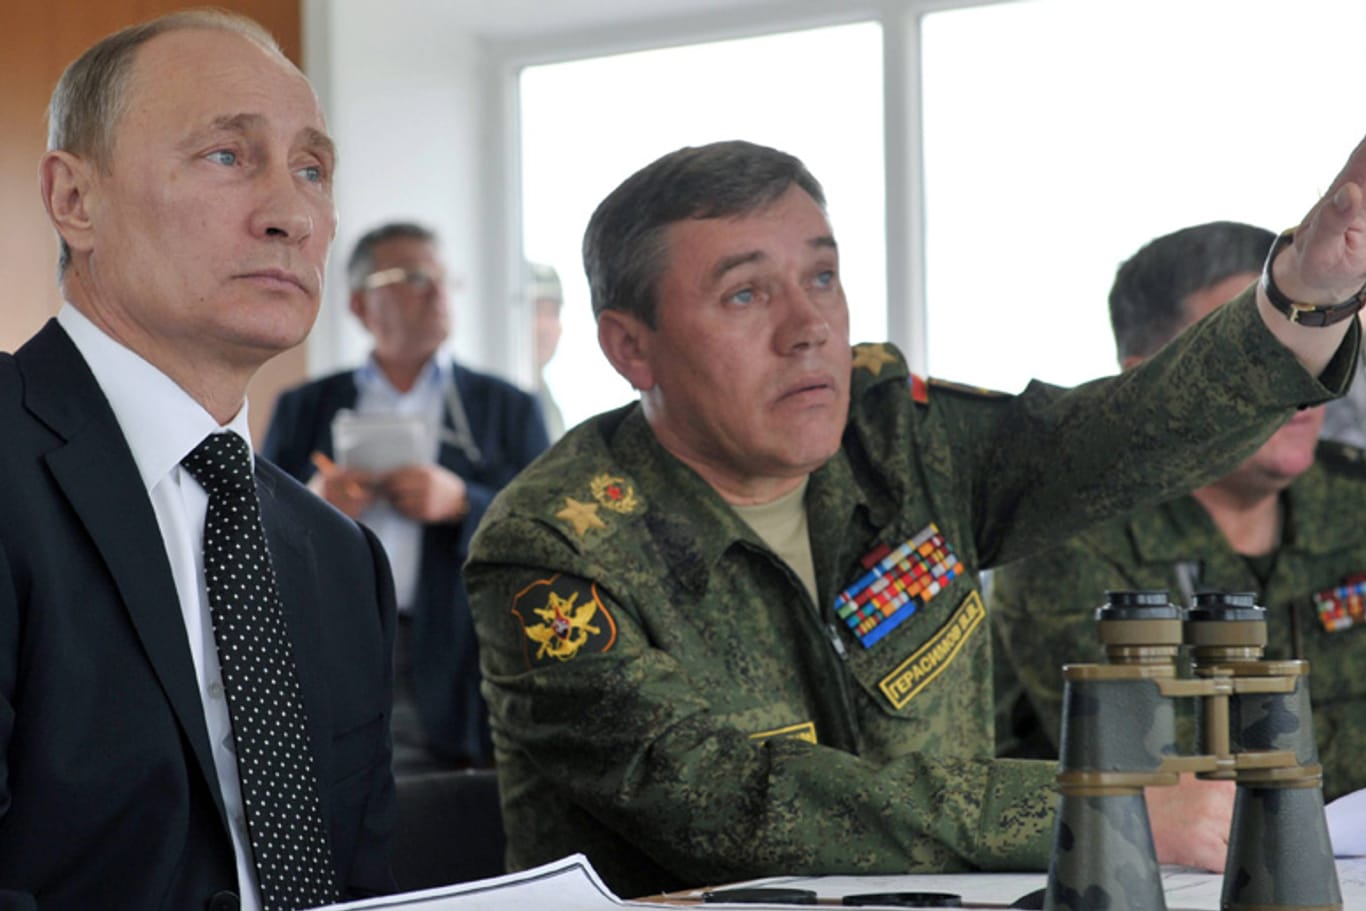 Besprechung der Taktik; Wladimir Putin mit dem russischen Generalstabschef Valeri Gerasimov.